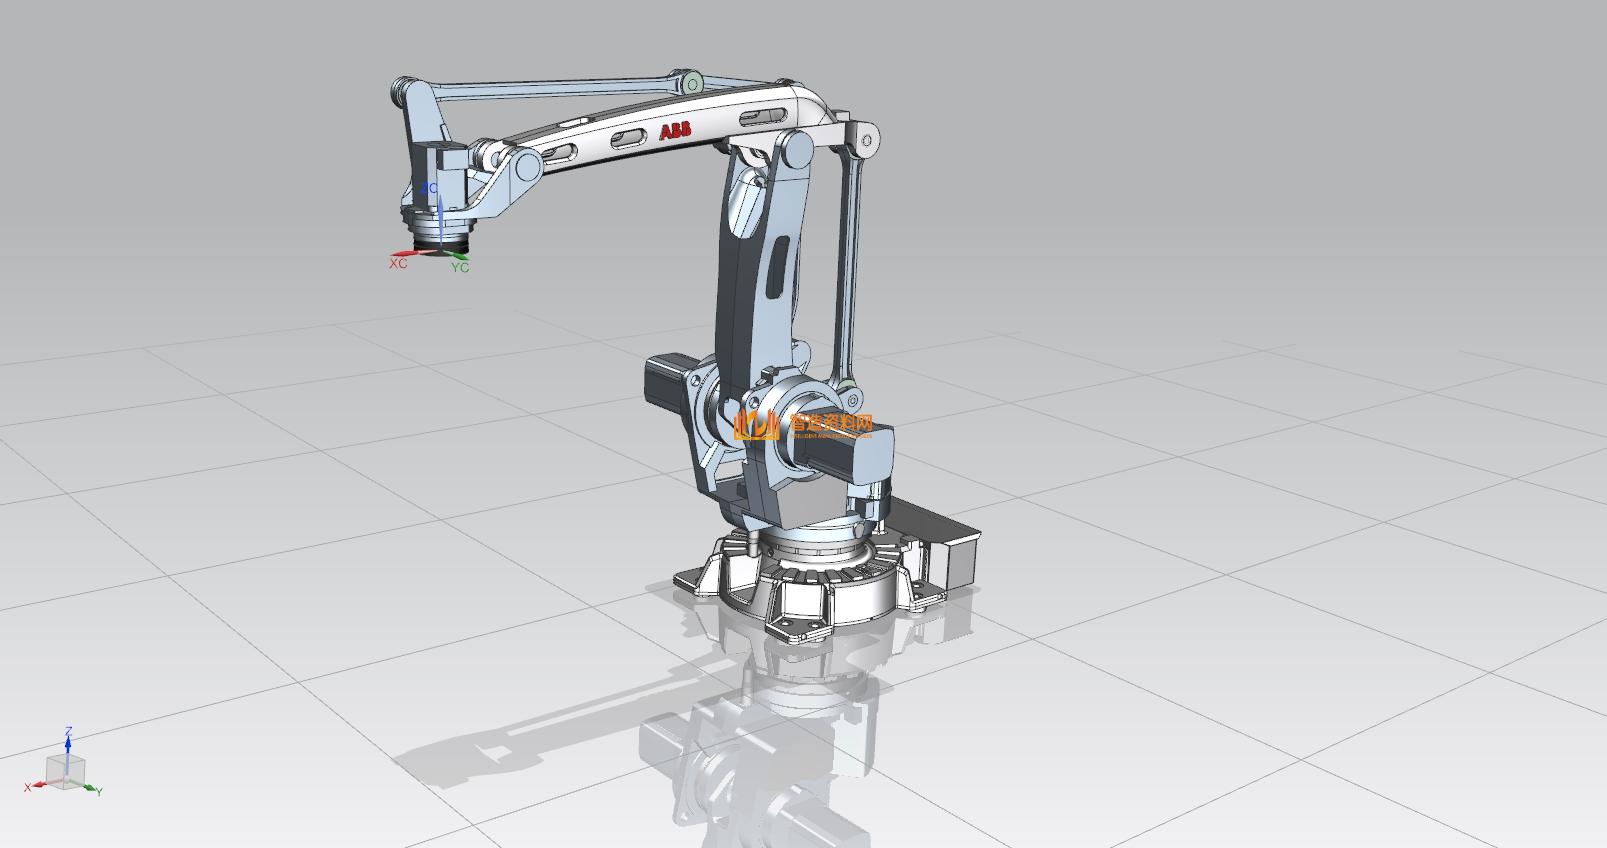 abb-irb-460-robots机械臂,NeadPay,第3张